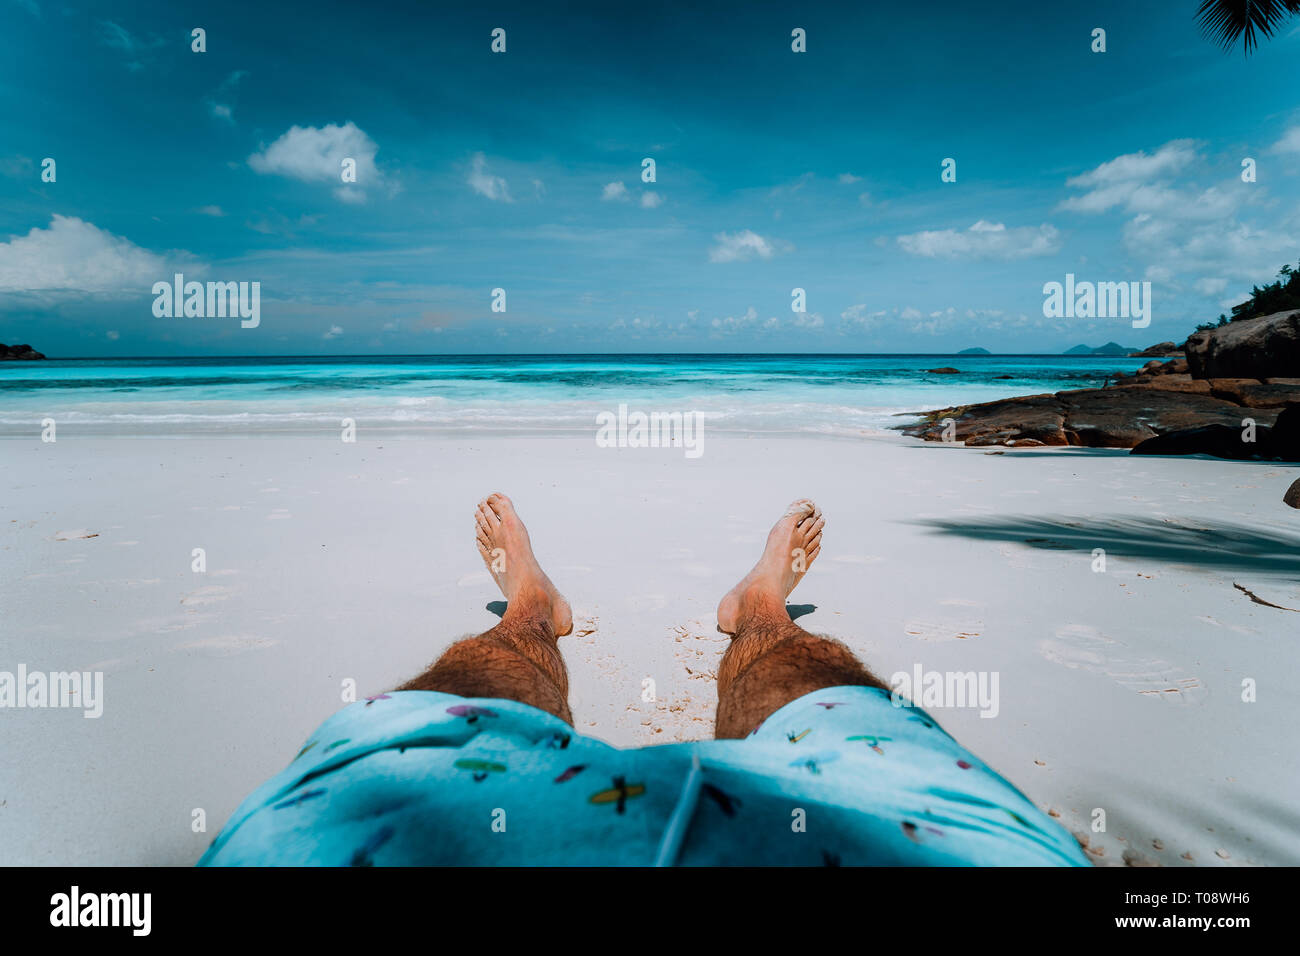 Reise Urlaub Hintergrund männliche Beine mit kurzen auf Paradise White Sand tropischen Strand vor türkisblauem Meer schwimmen. Exotischen Urlaub Stockfoto